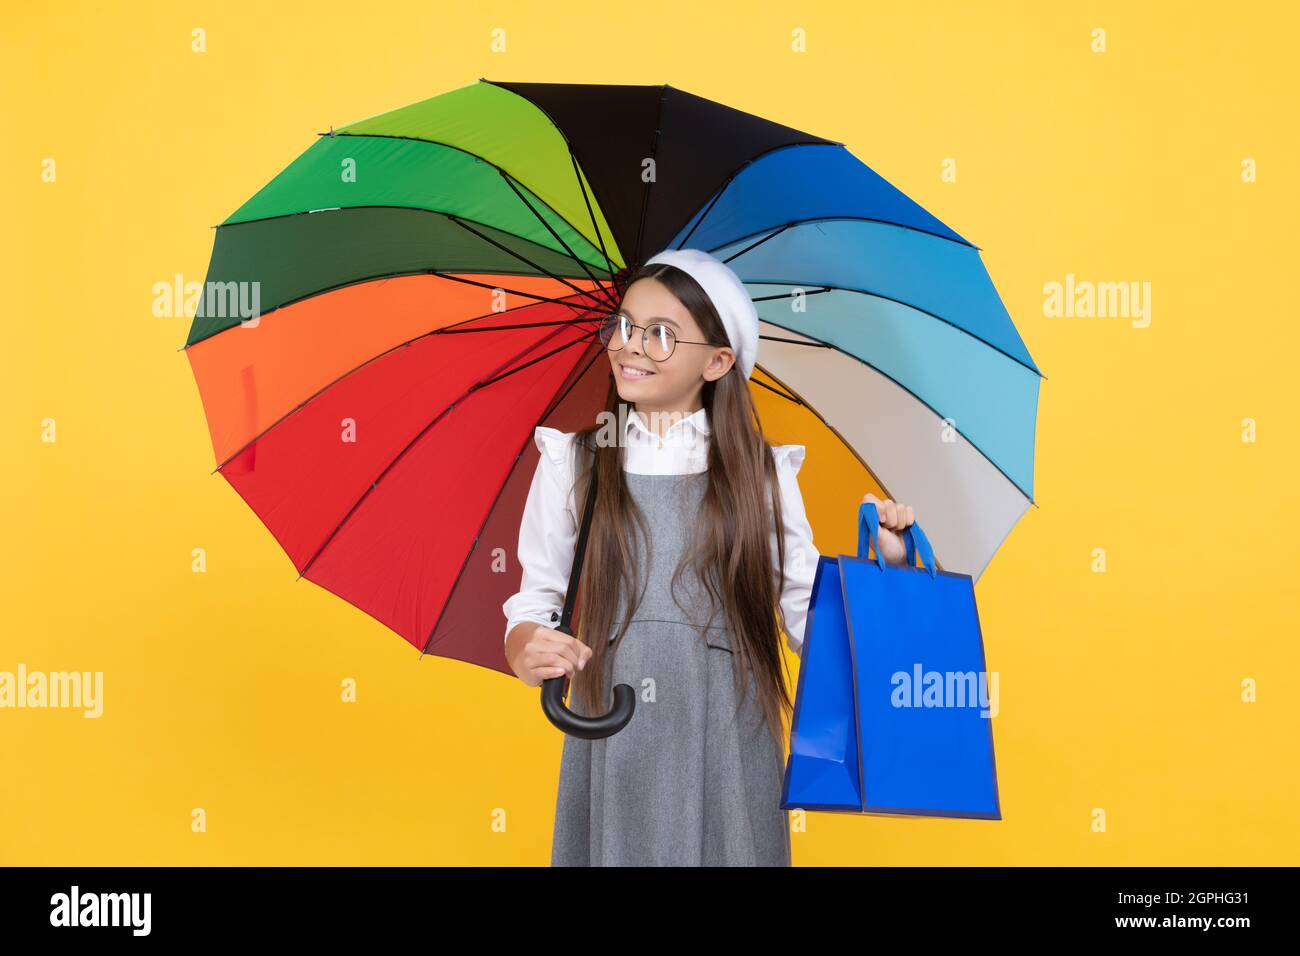 venta estacional. niño adolescente bajo sombrilla colorida. beret del cabrito con paraguas del arco iris. estación del otoño. Foto de stock